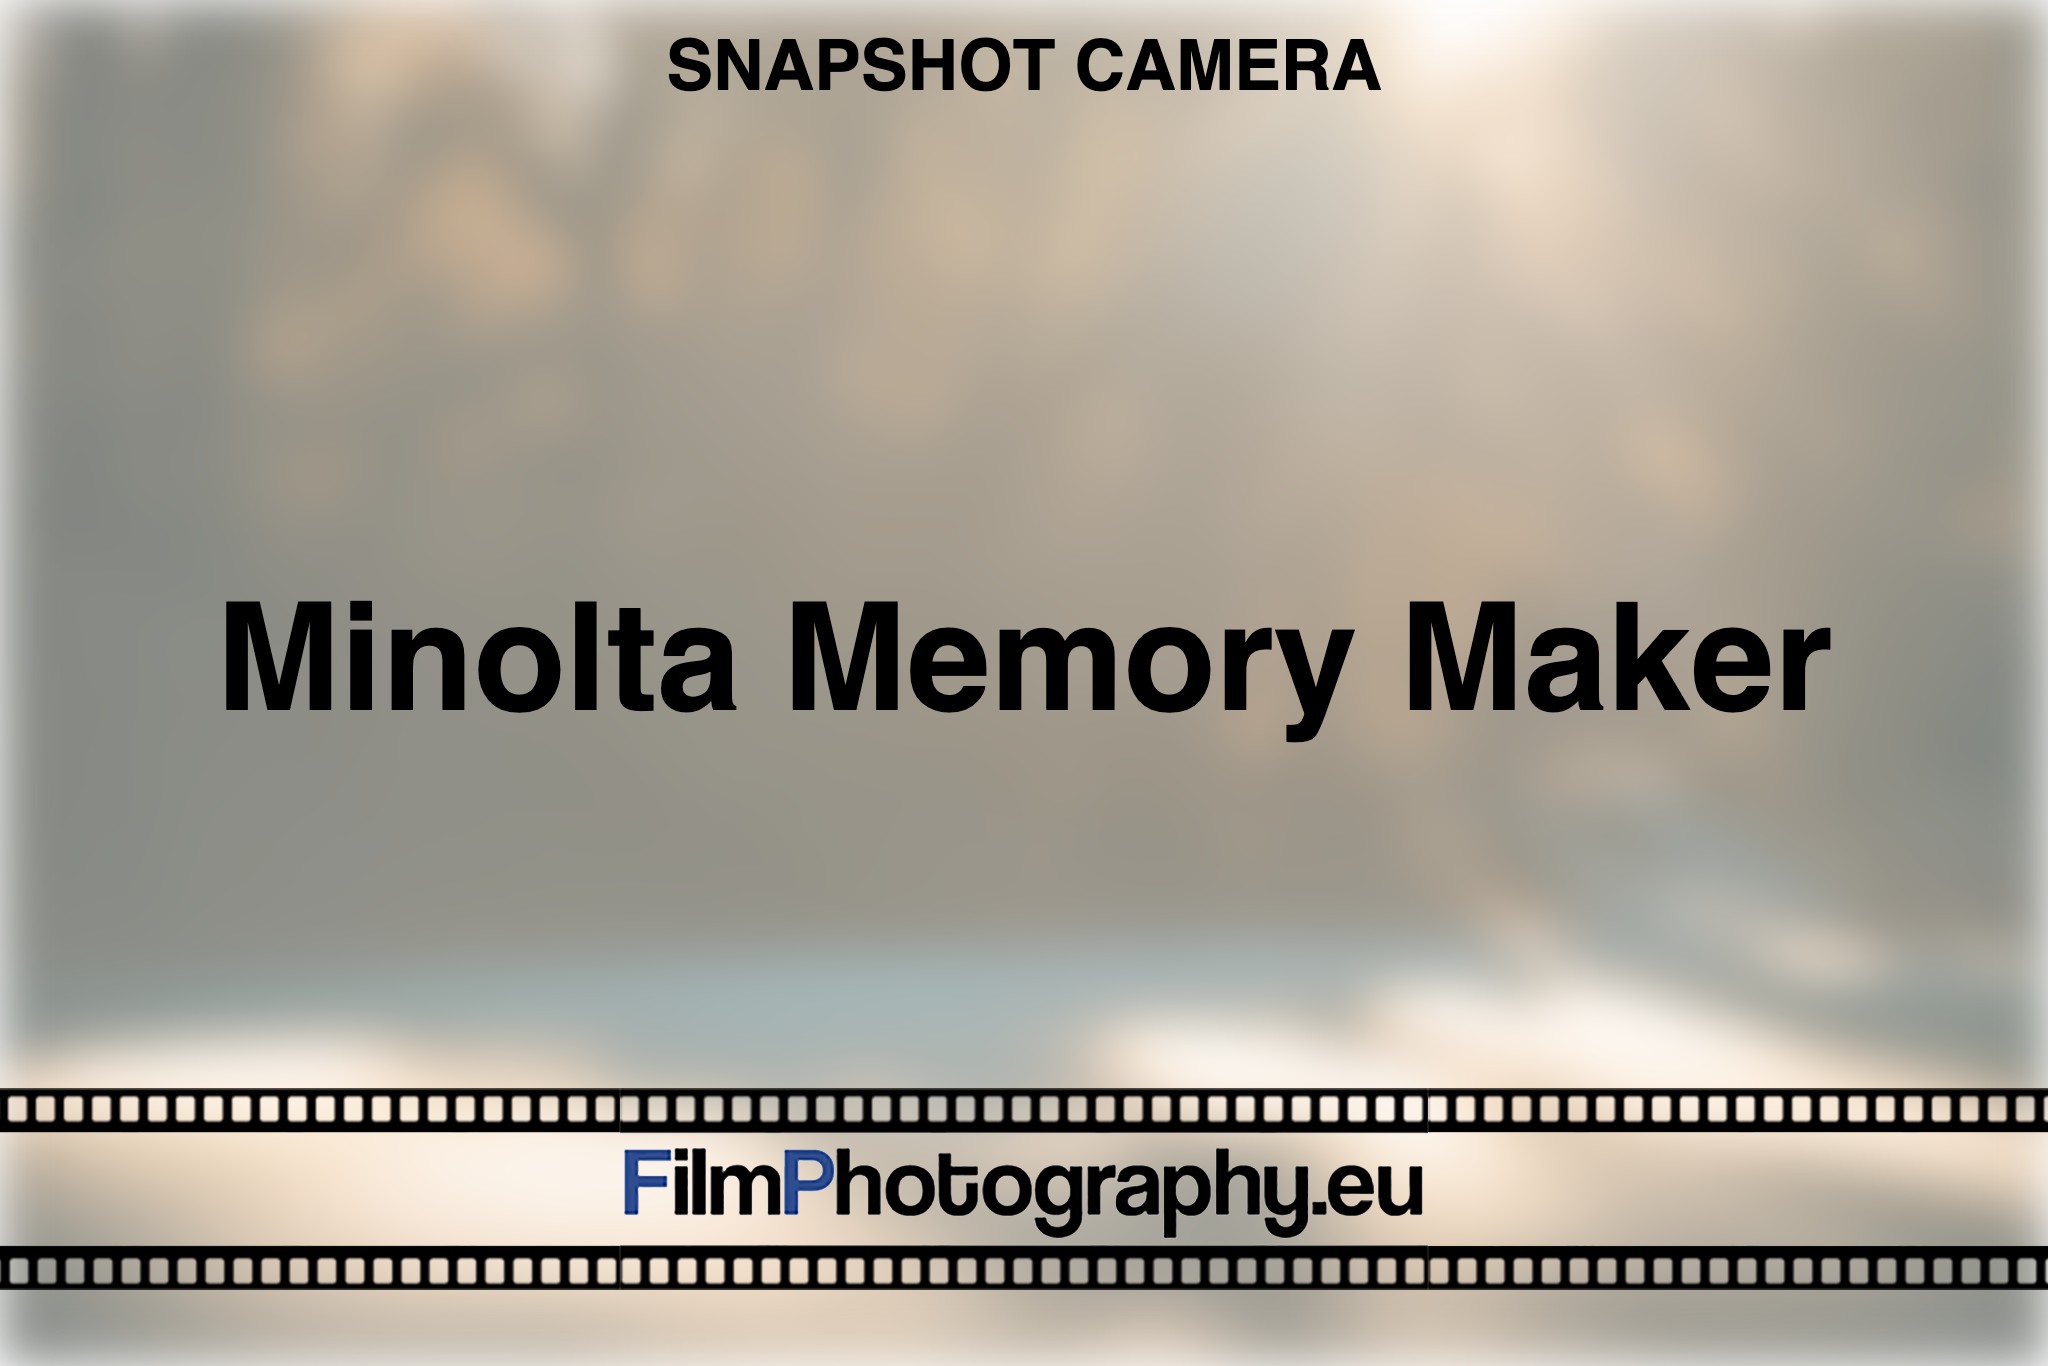 minolta-memory-maker-snapshot-camera-bnv